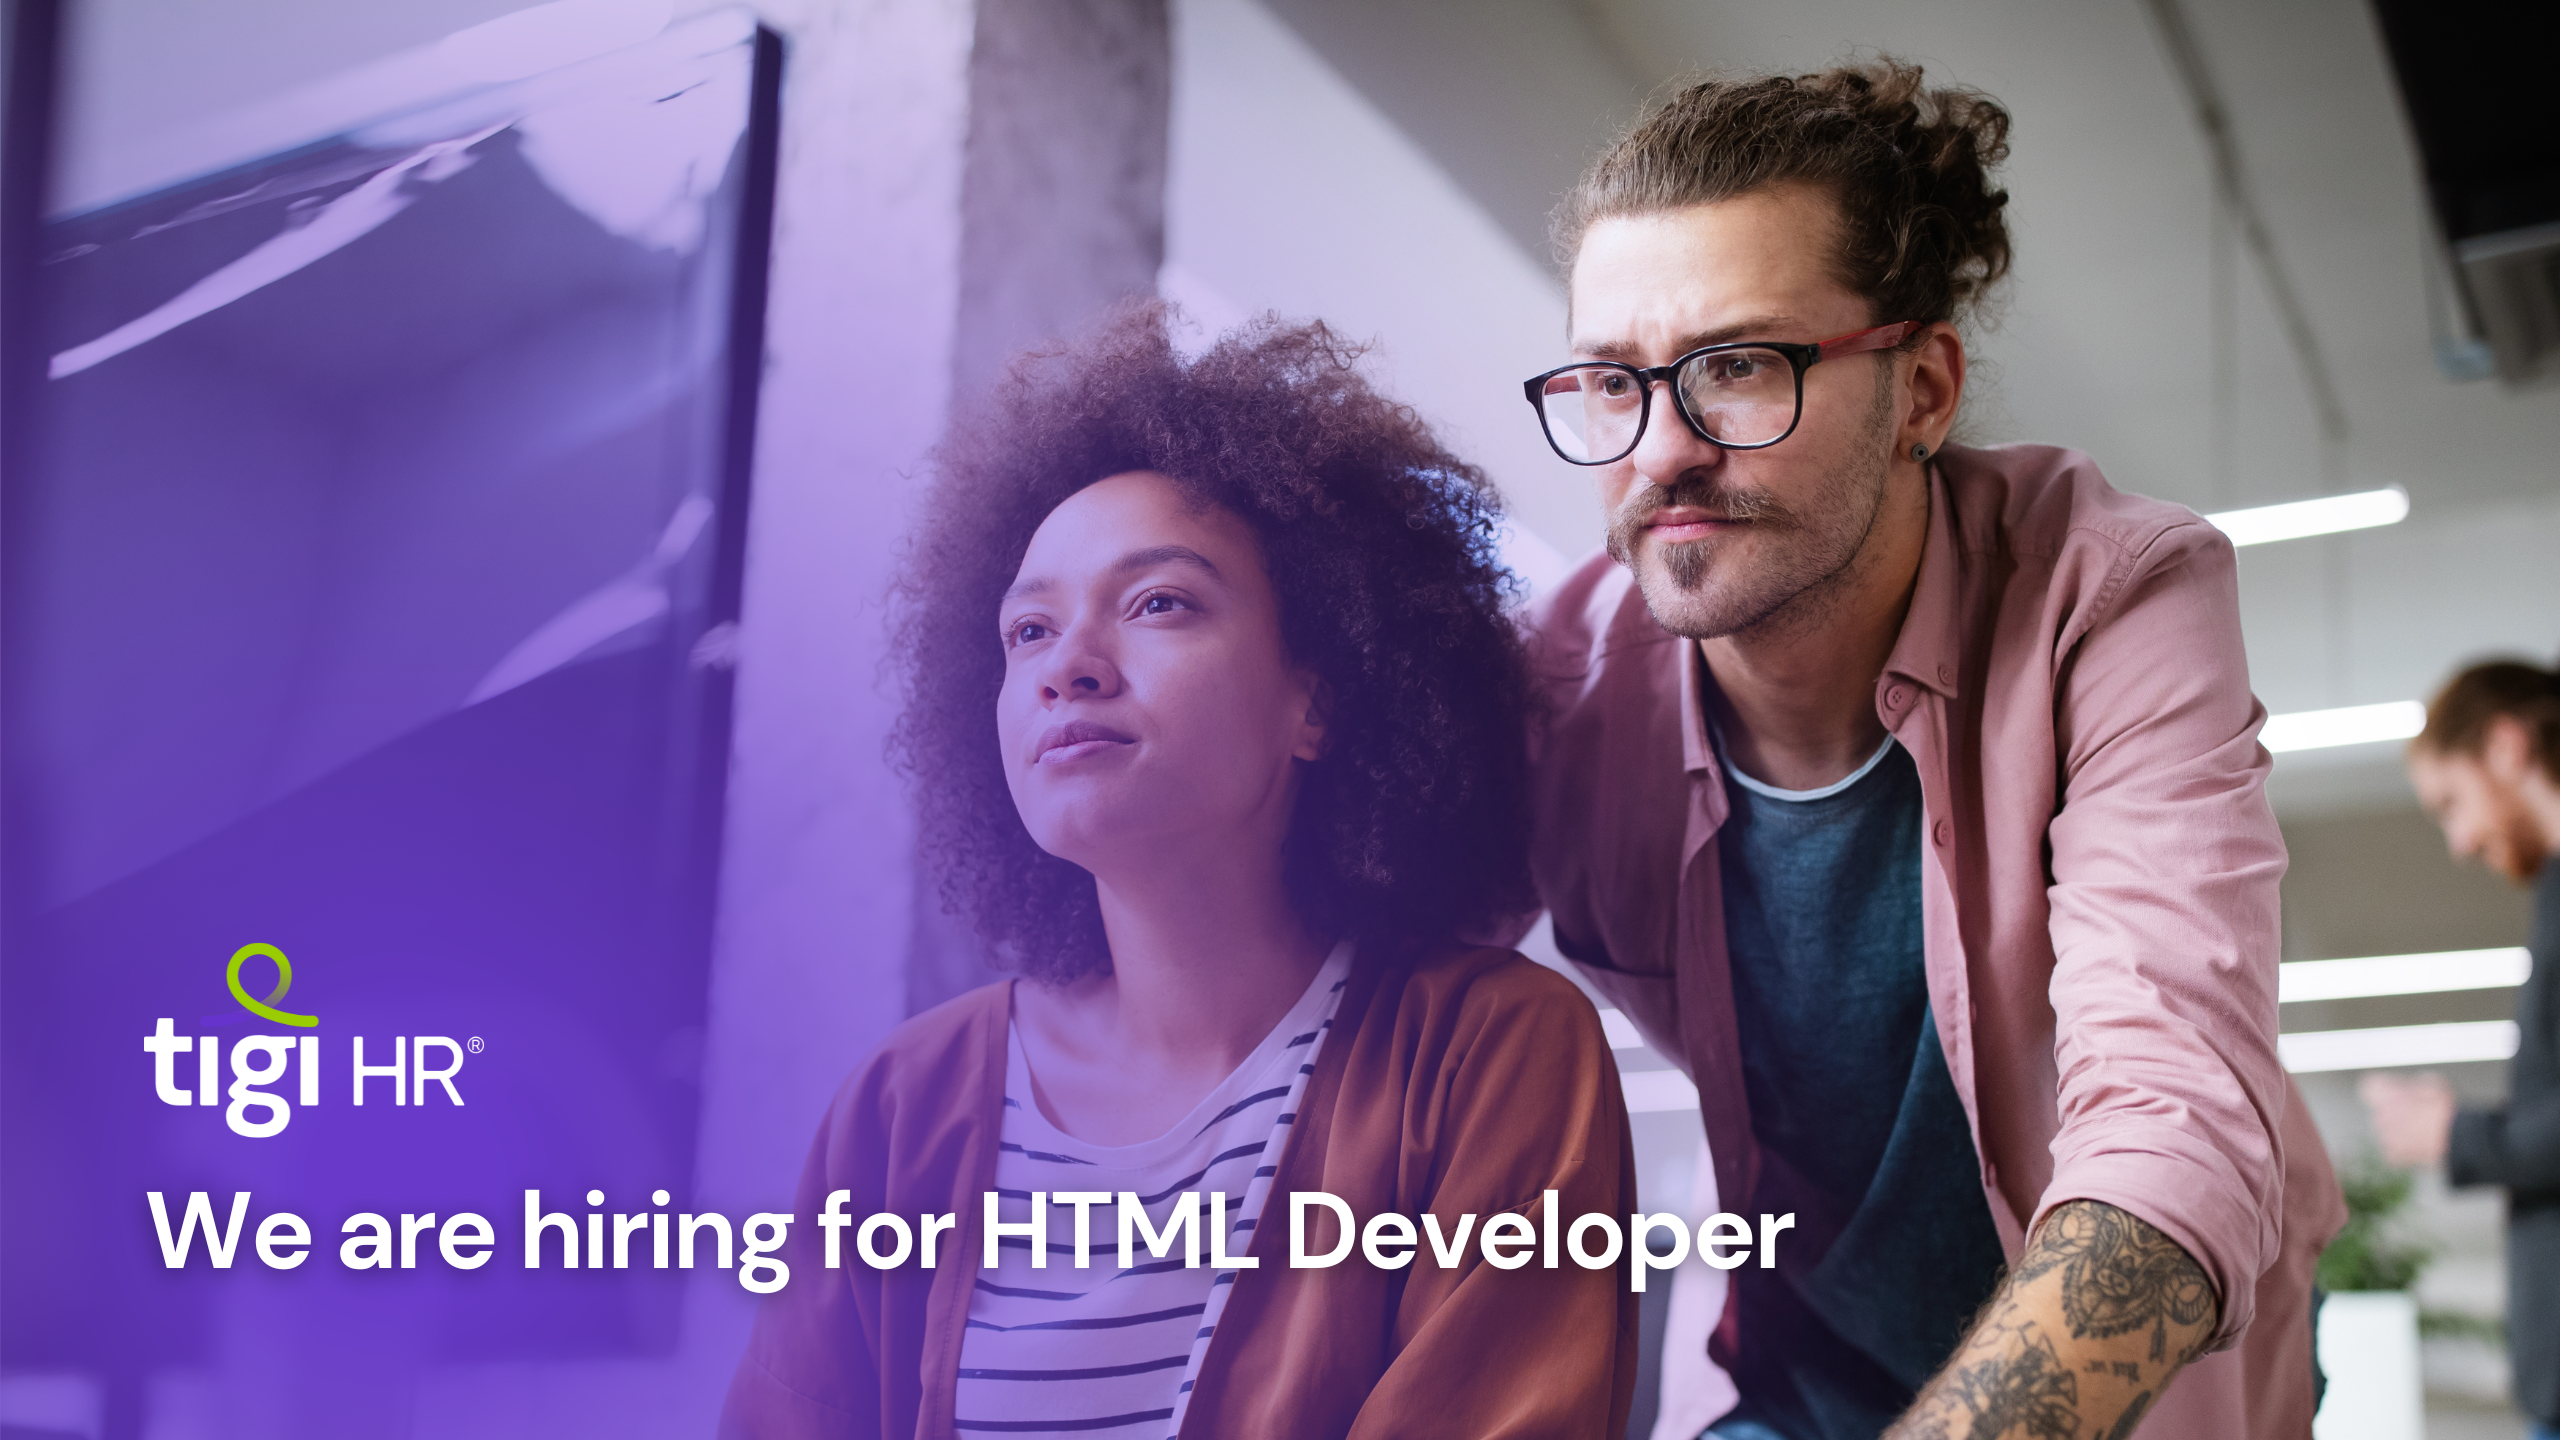 We are hiring HTML Developer. Find jobs for HTML Developer.